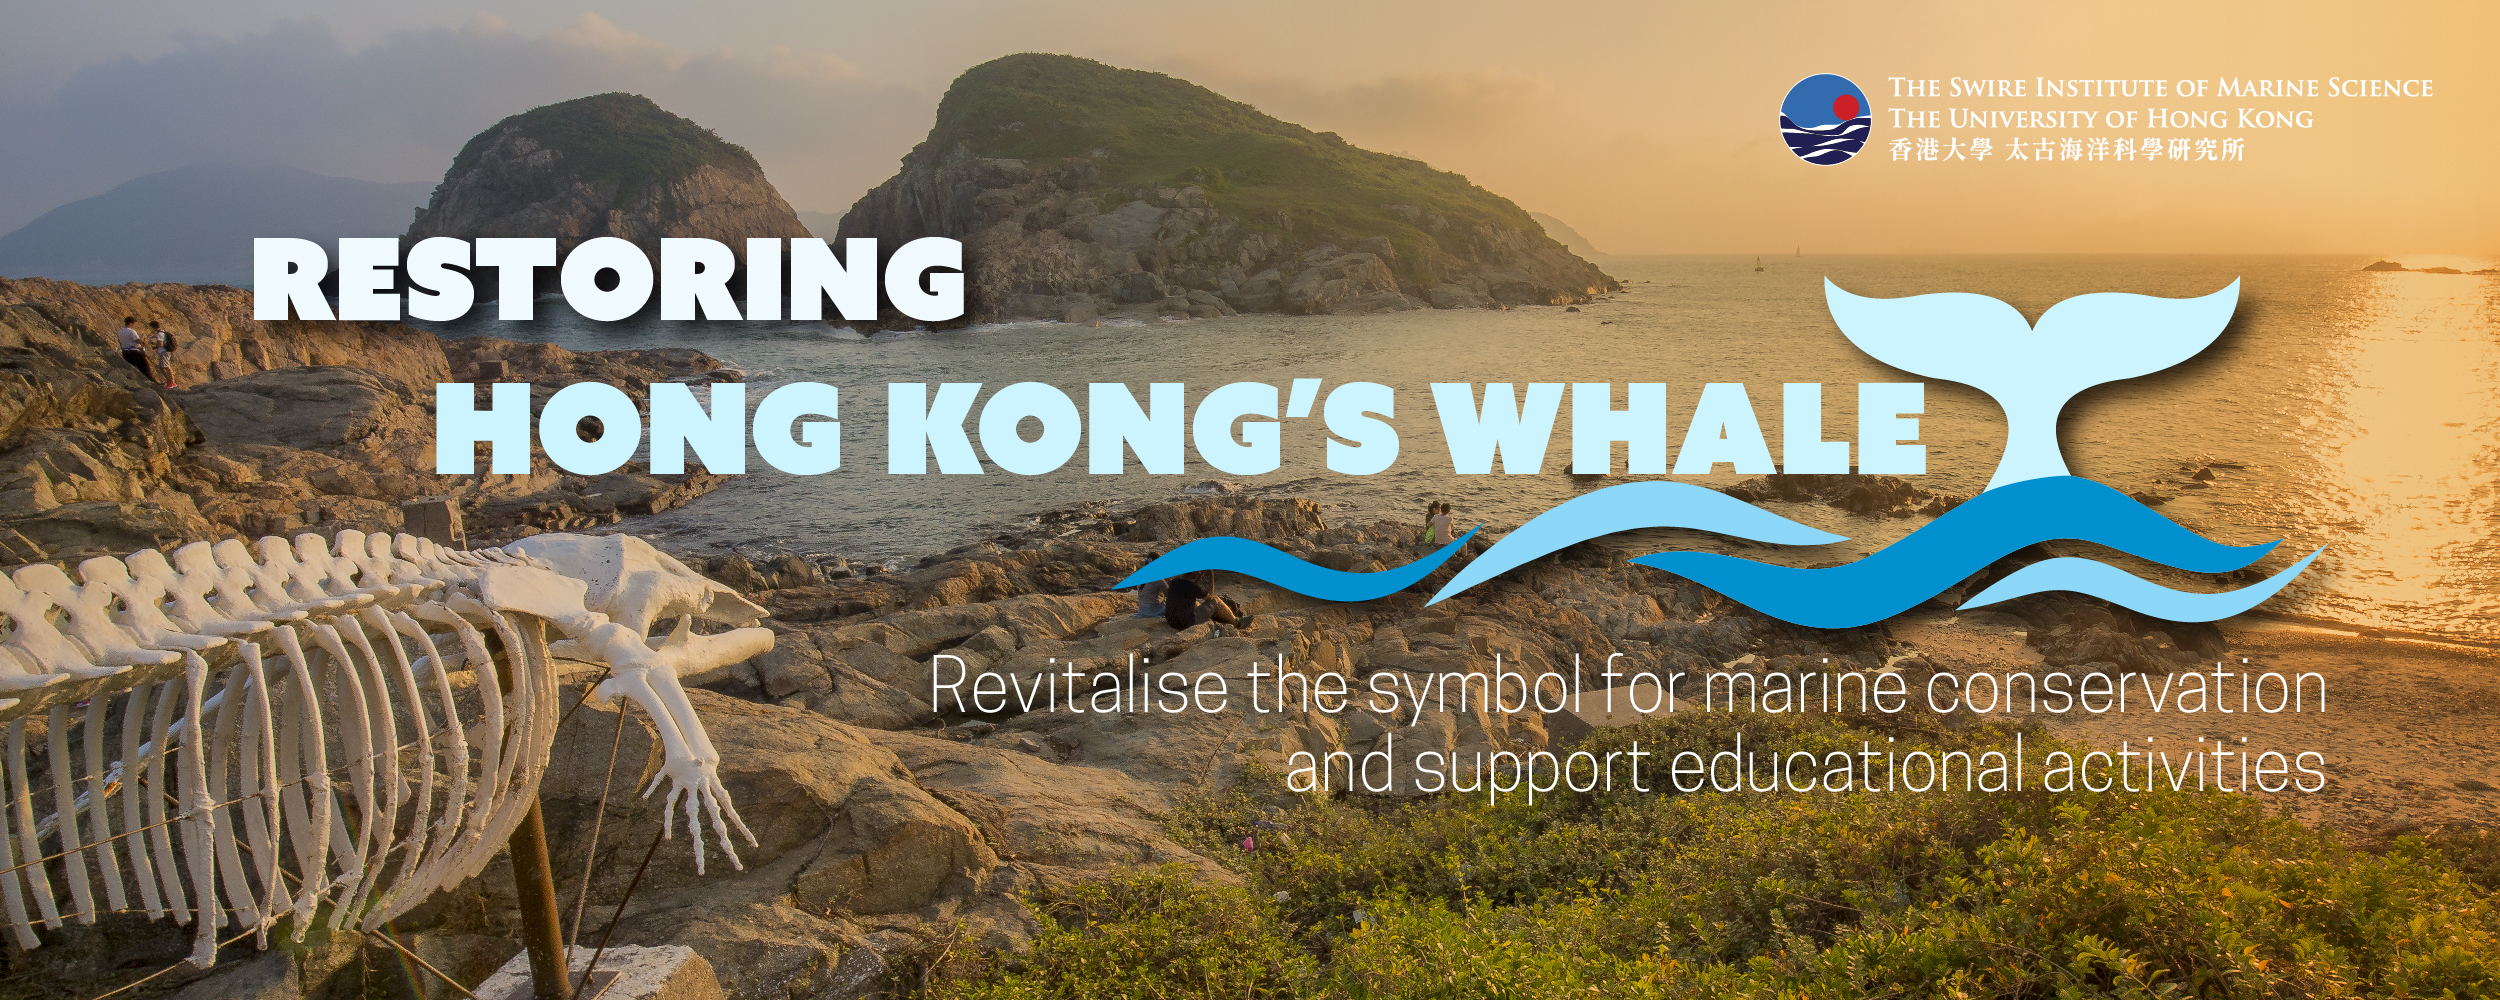 Restoring Hong Kong's Whale